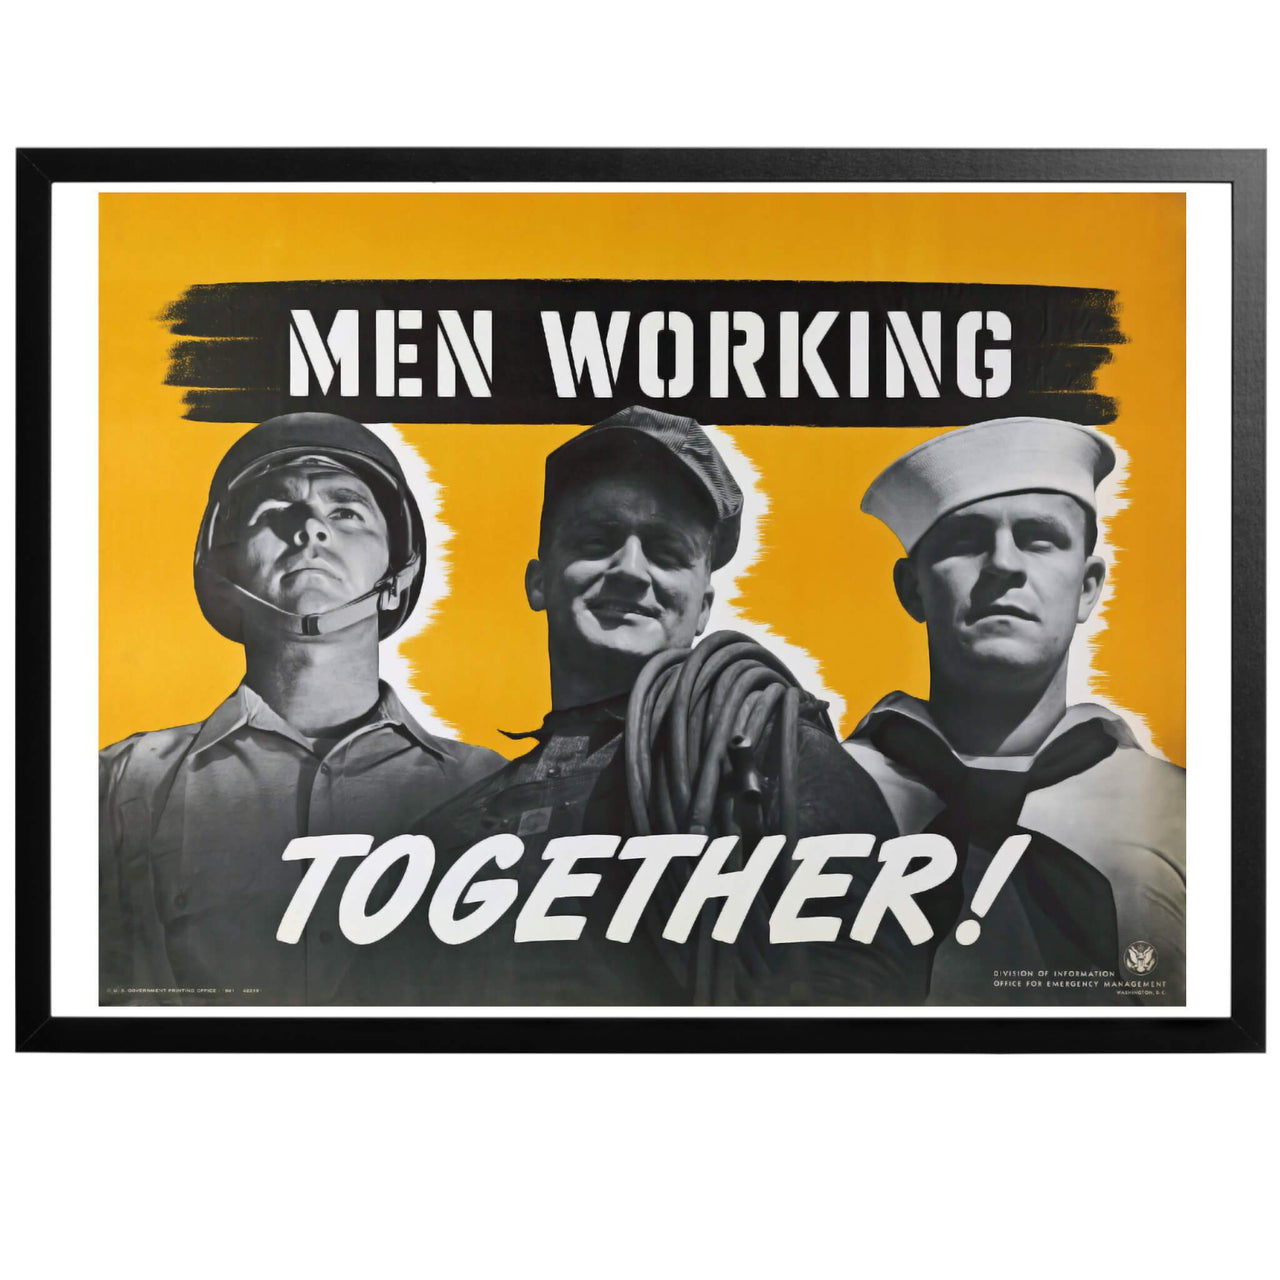 En tekniskt avancerad affisch där man blandar foto och grafik, något som var betydligt mer komplicerat innan datorerna gjorde sitt intåg. Affischen visar en soldat, en fabriksarbetare och en matros. I krigstid jobbar alla män tillsammans mot gemensamt mål!